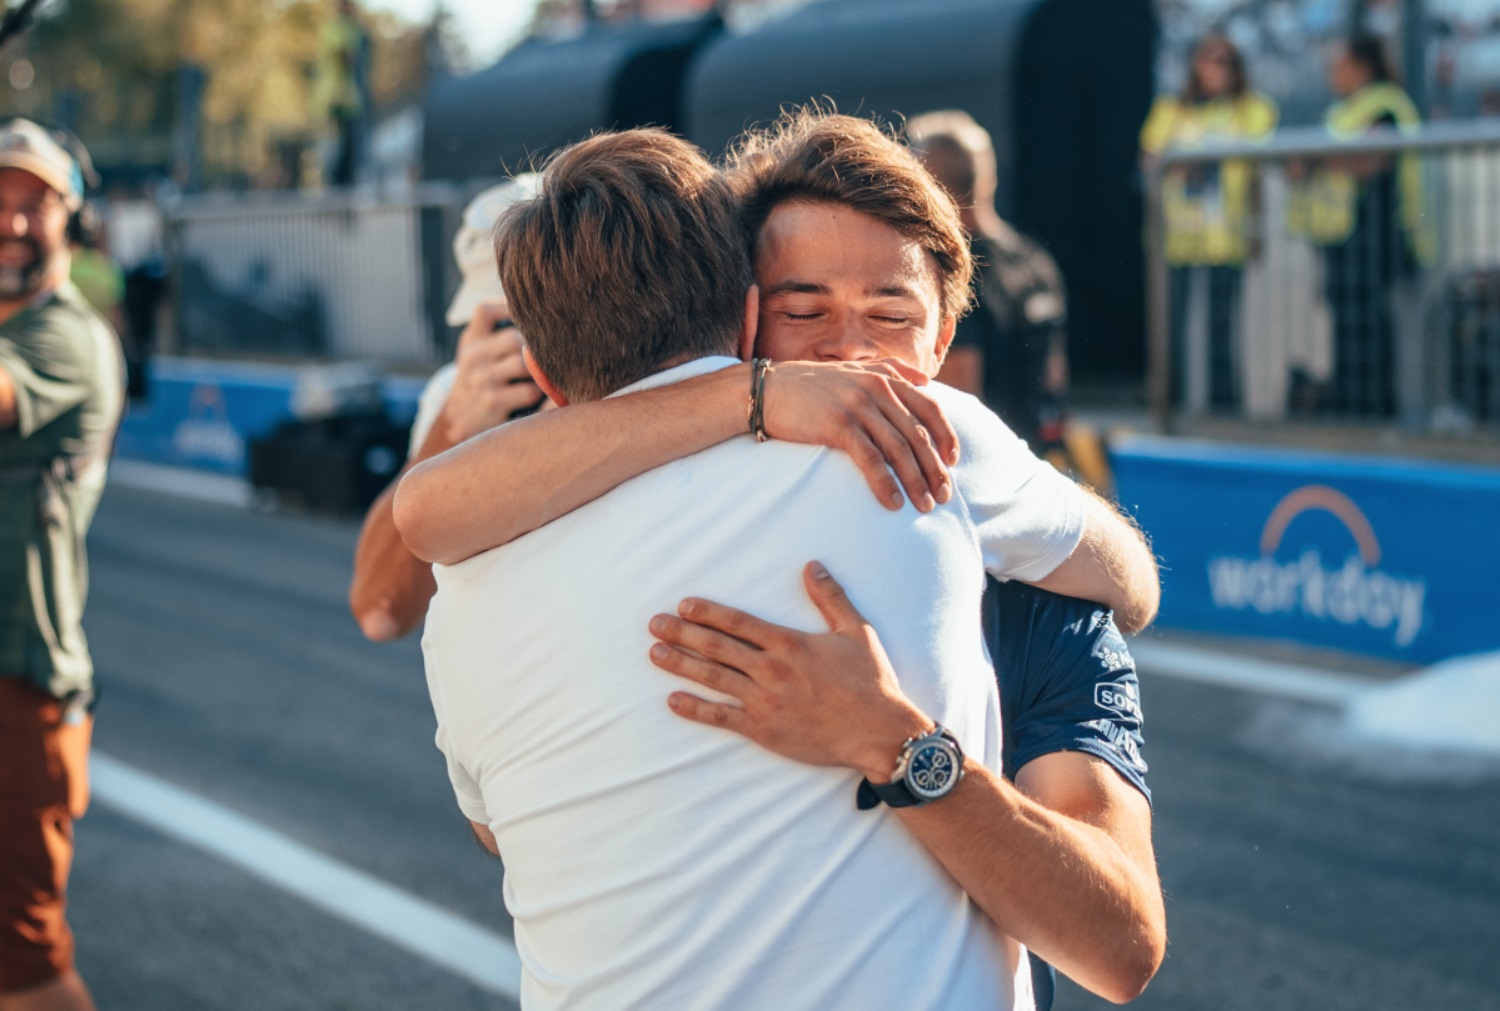    Nyck de Vries i Jost Capito świętują po GP Włoch 2022. Dziś obaj są poza Formułą 1 (fot. Williams).